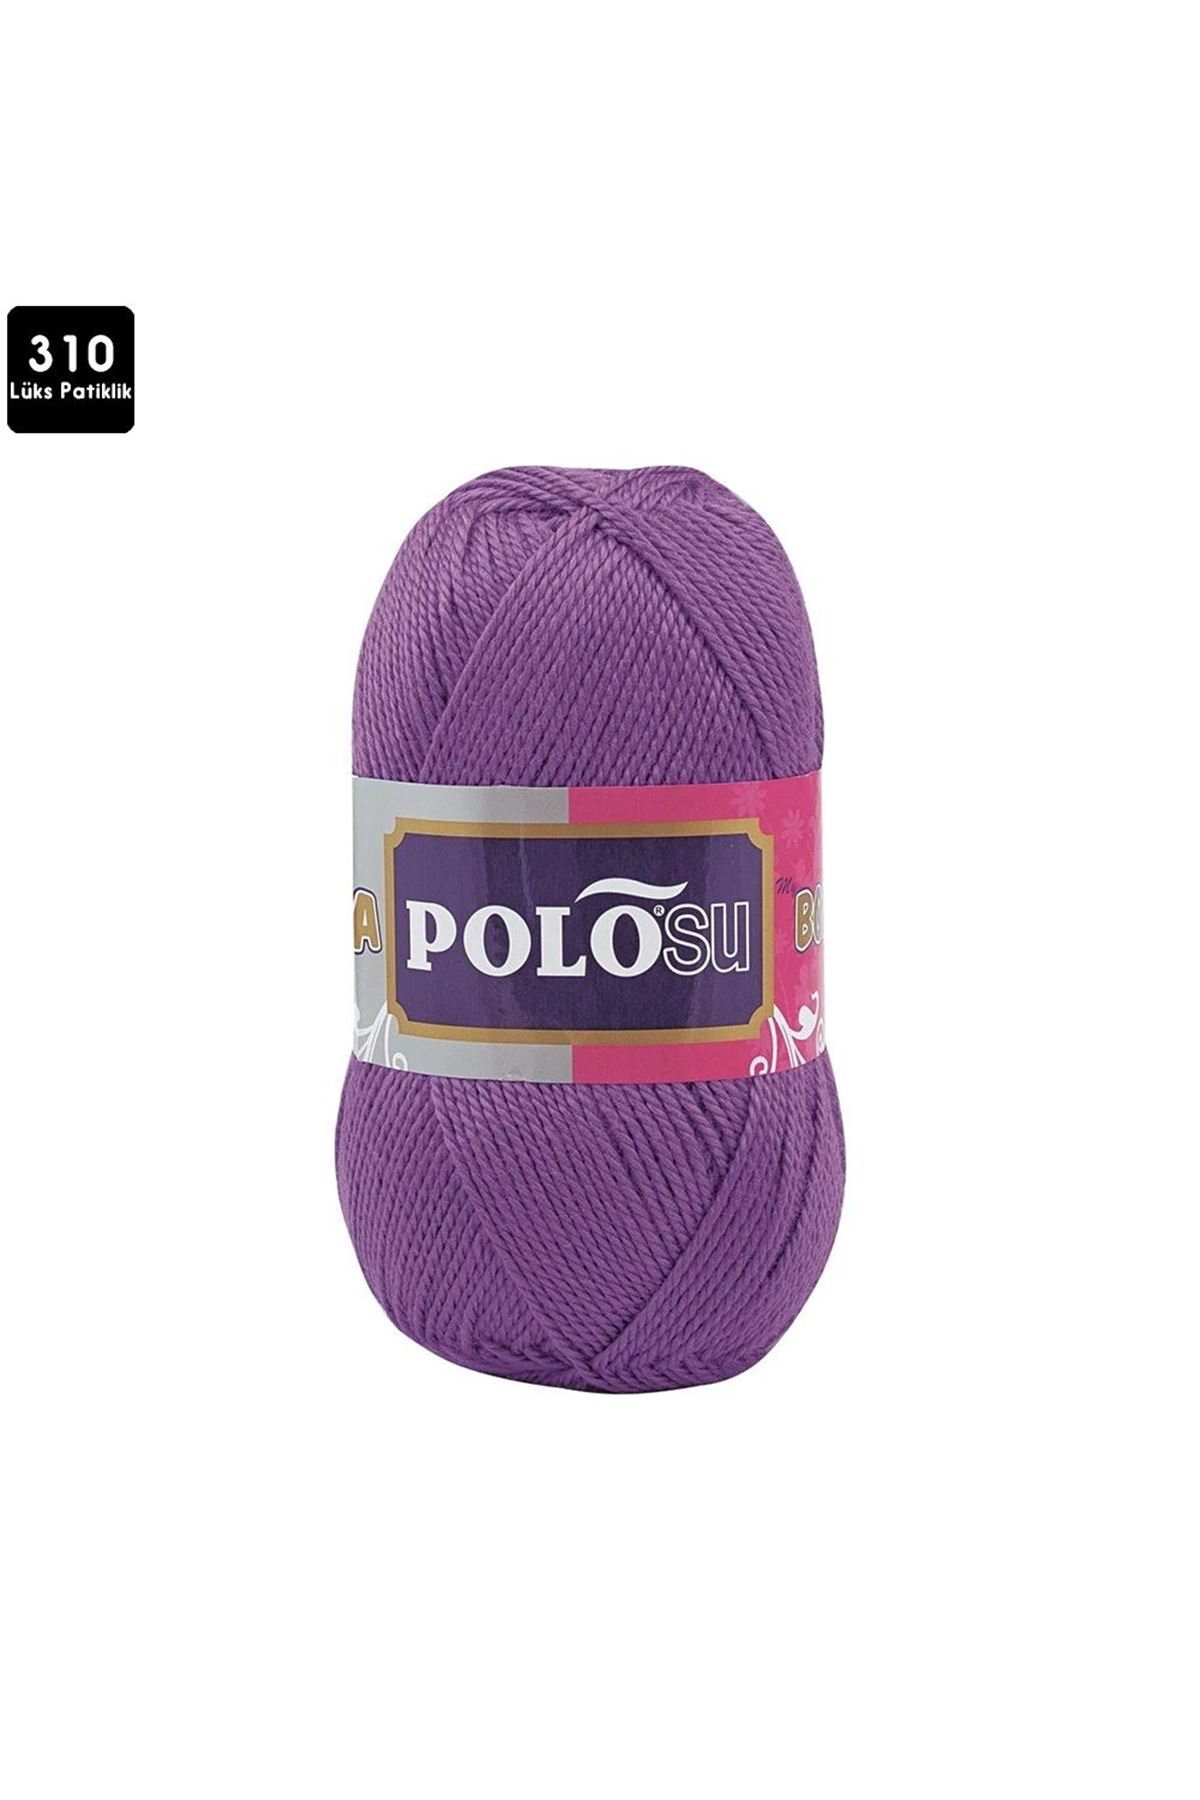 PoloSU Lüks Patiklik Renk No:310